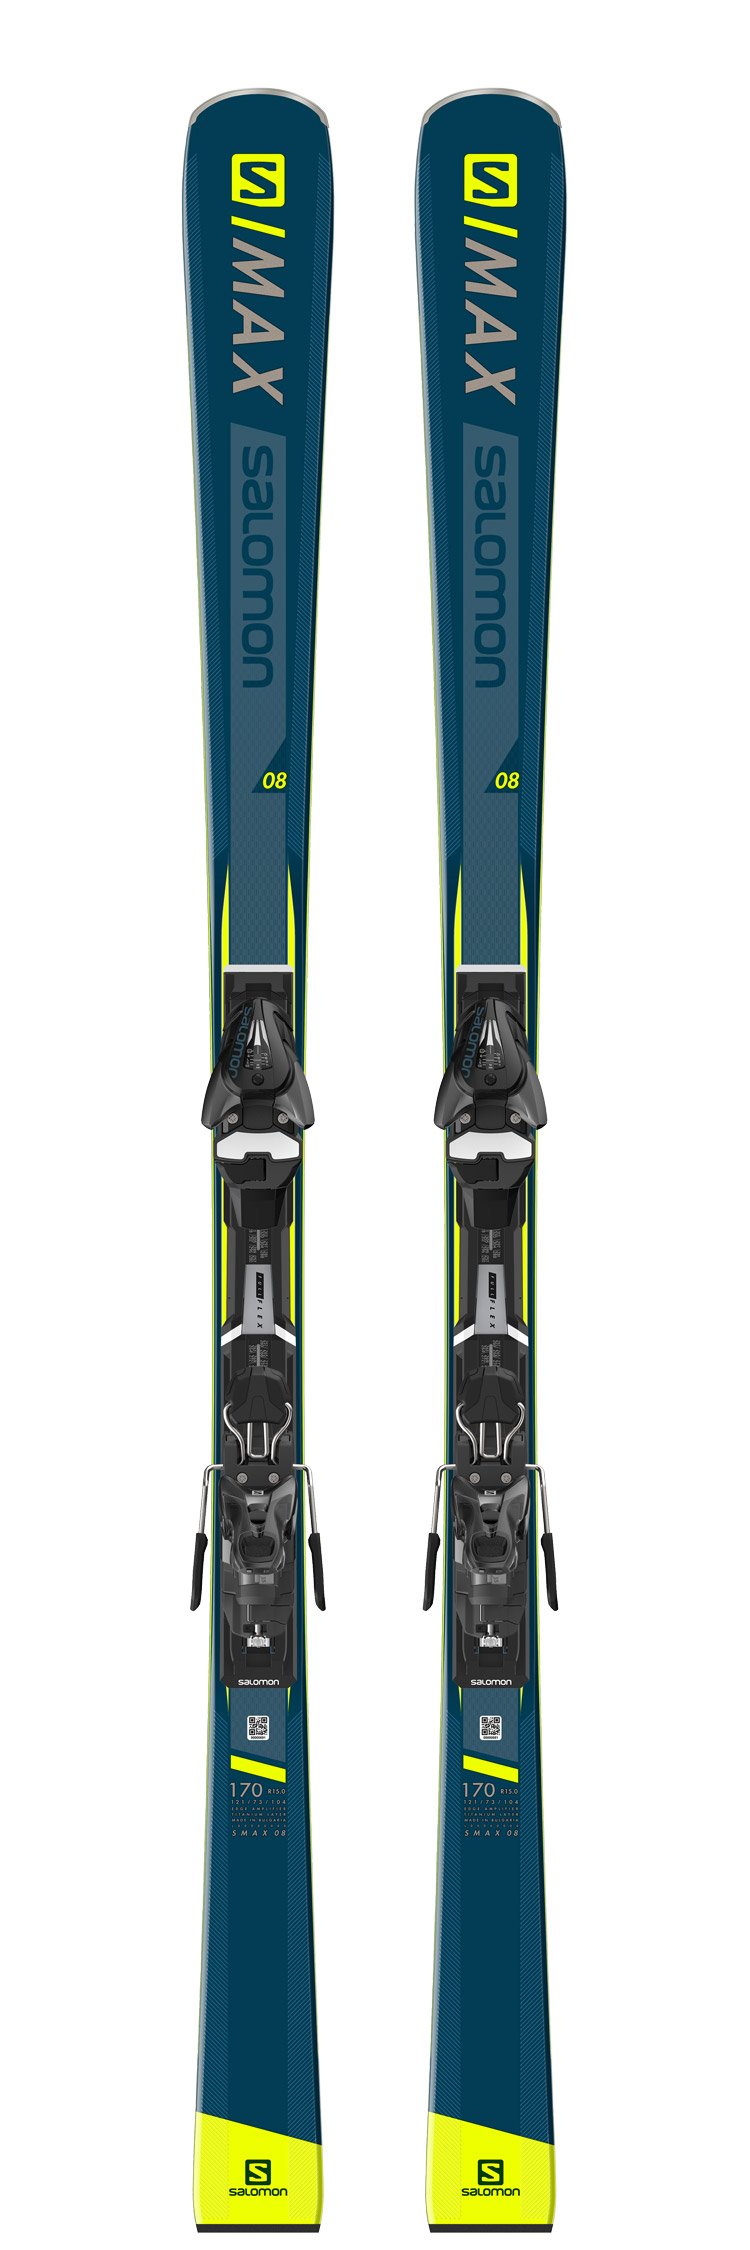 Alpine ski set S/Max 8 - Winter 2019 |